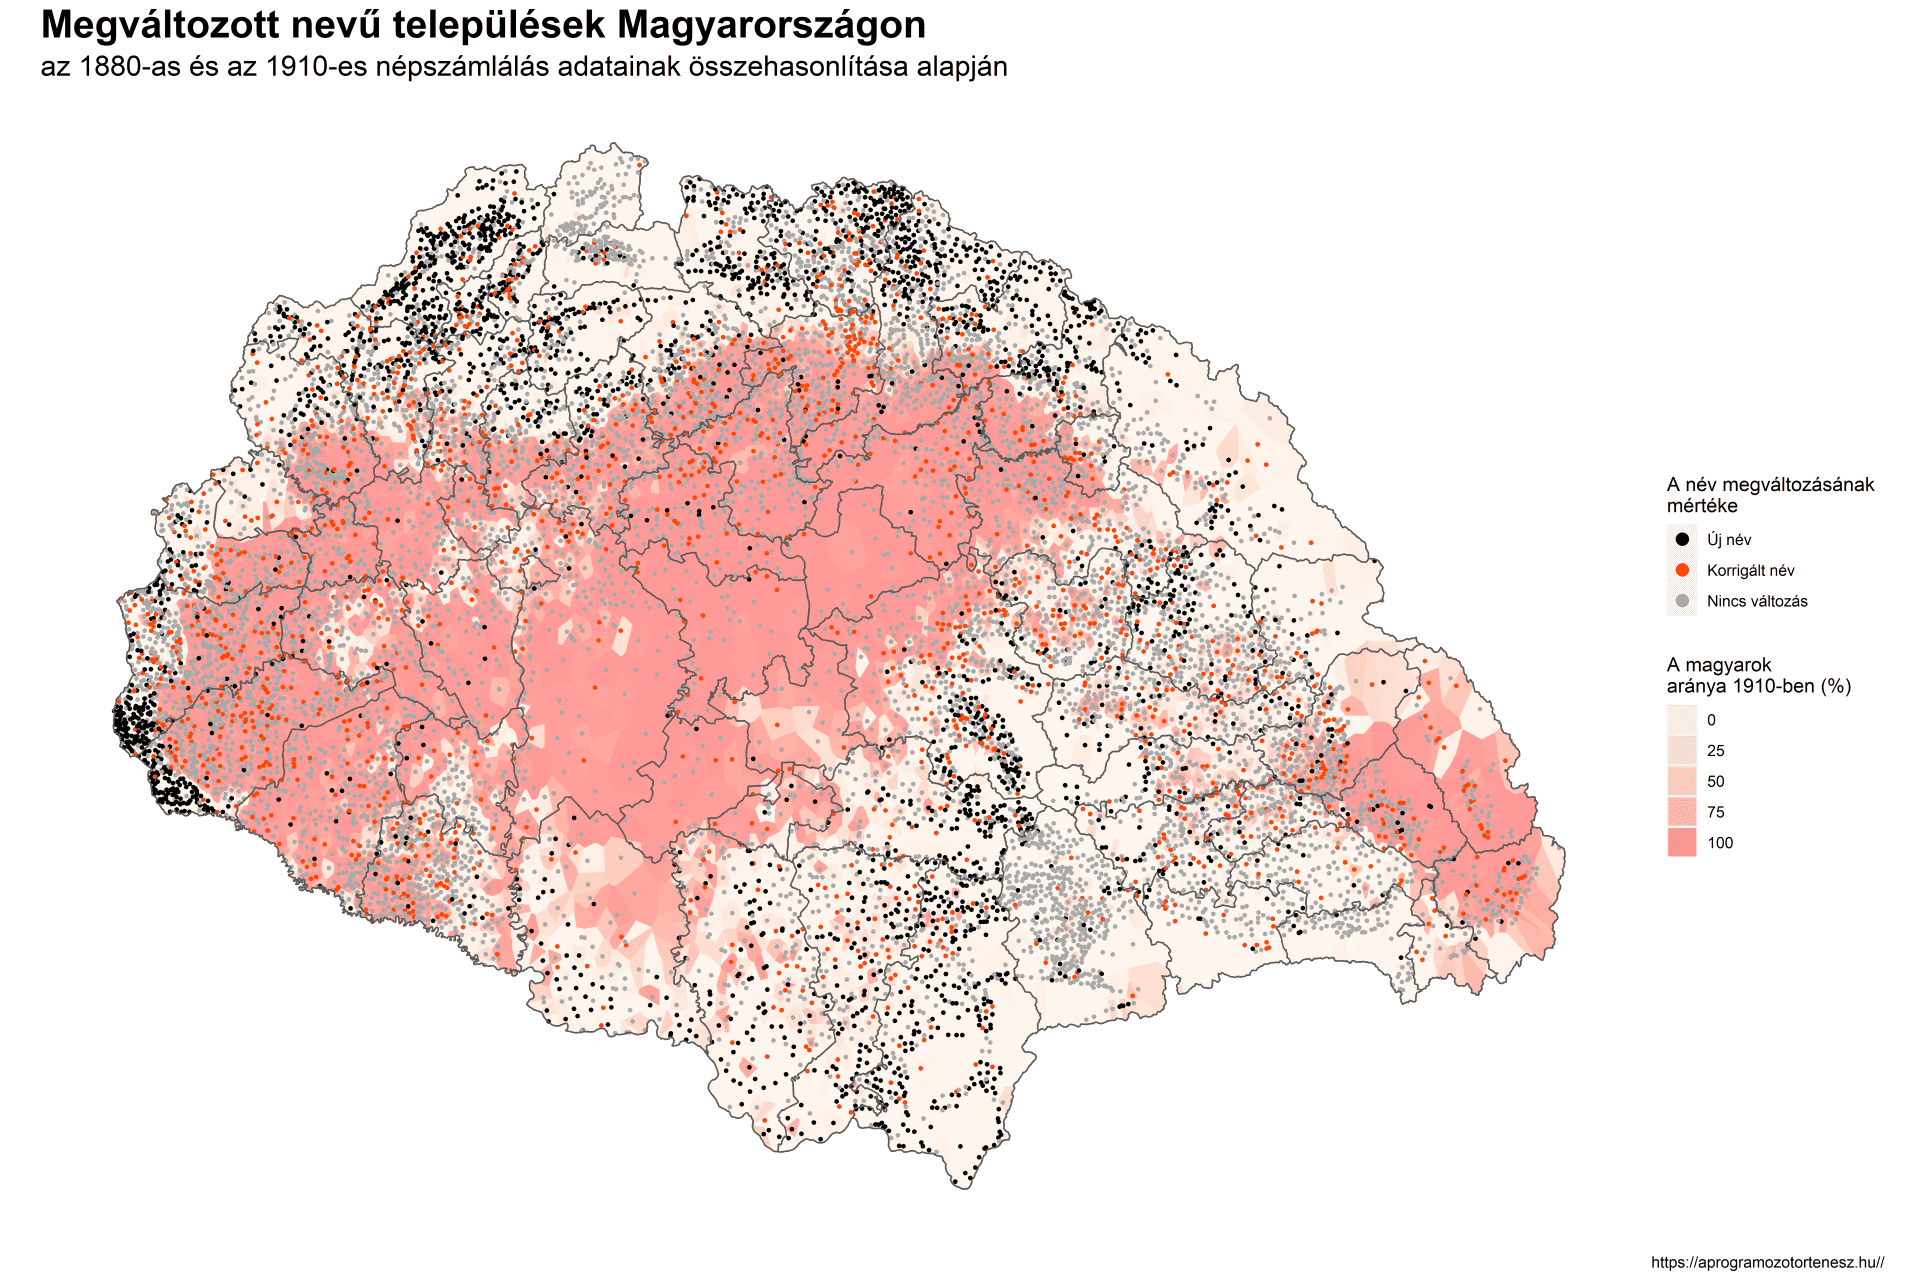 Megváltozott nevű települések Magyarországon az 1880-as és az 1910-es népszámlálás adatainak összehasonlítása alapján